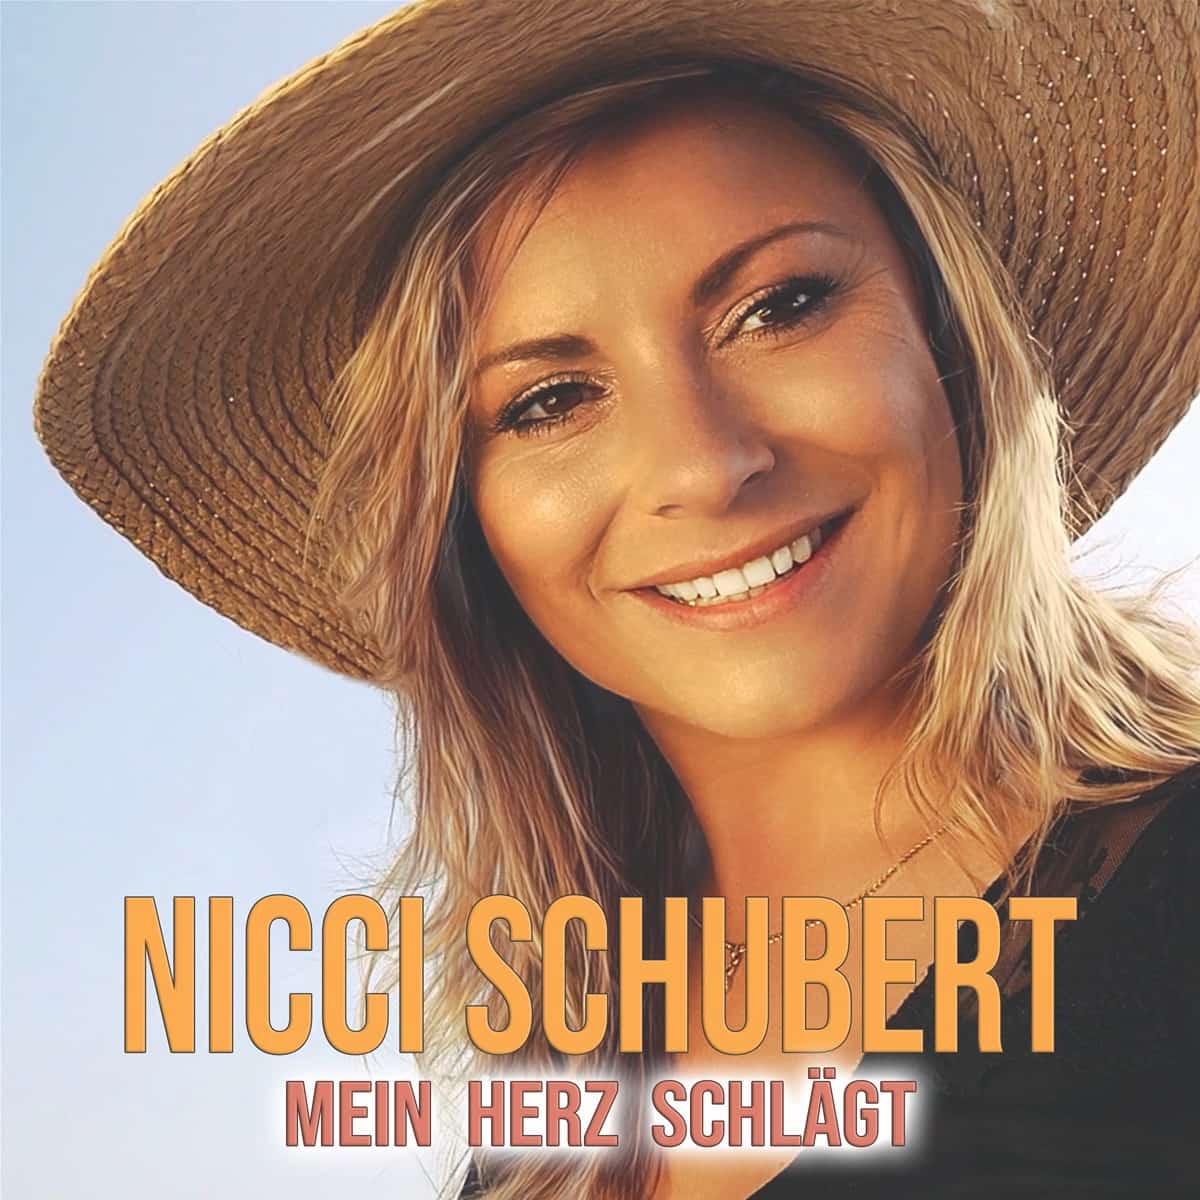 Nicci Schubert mit “Mein Herz schlägt” als Neuvorstellung gleich auf Platz 1 in den Salsango Schlager-Charts